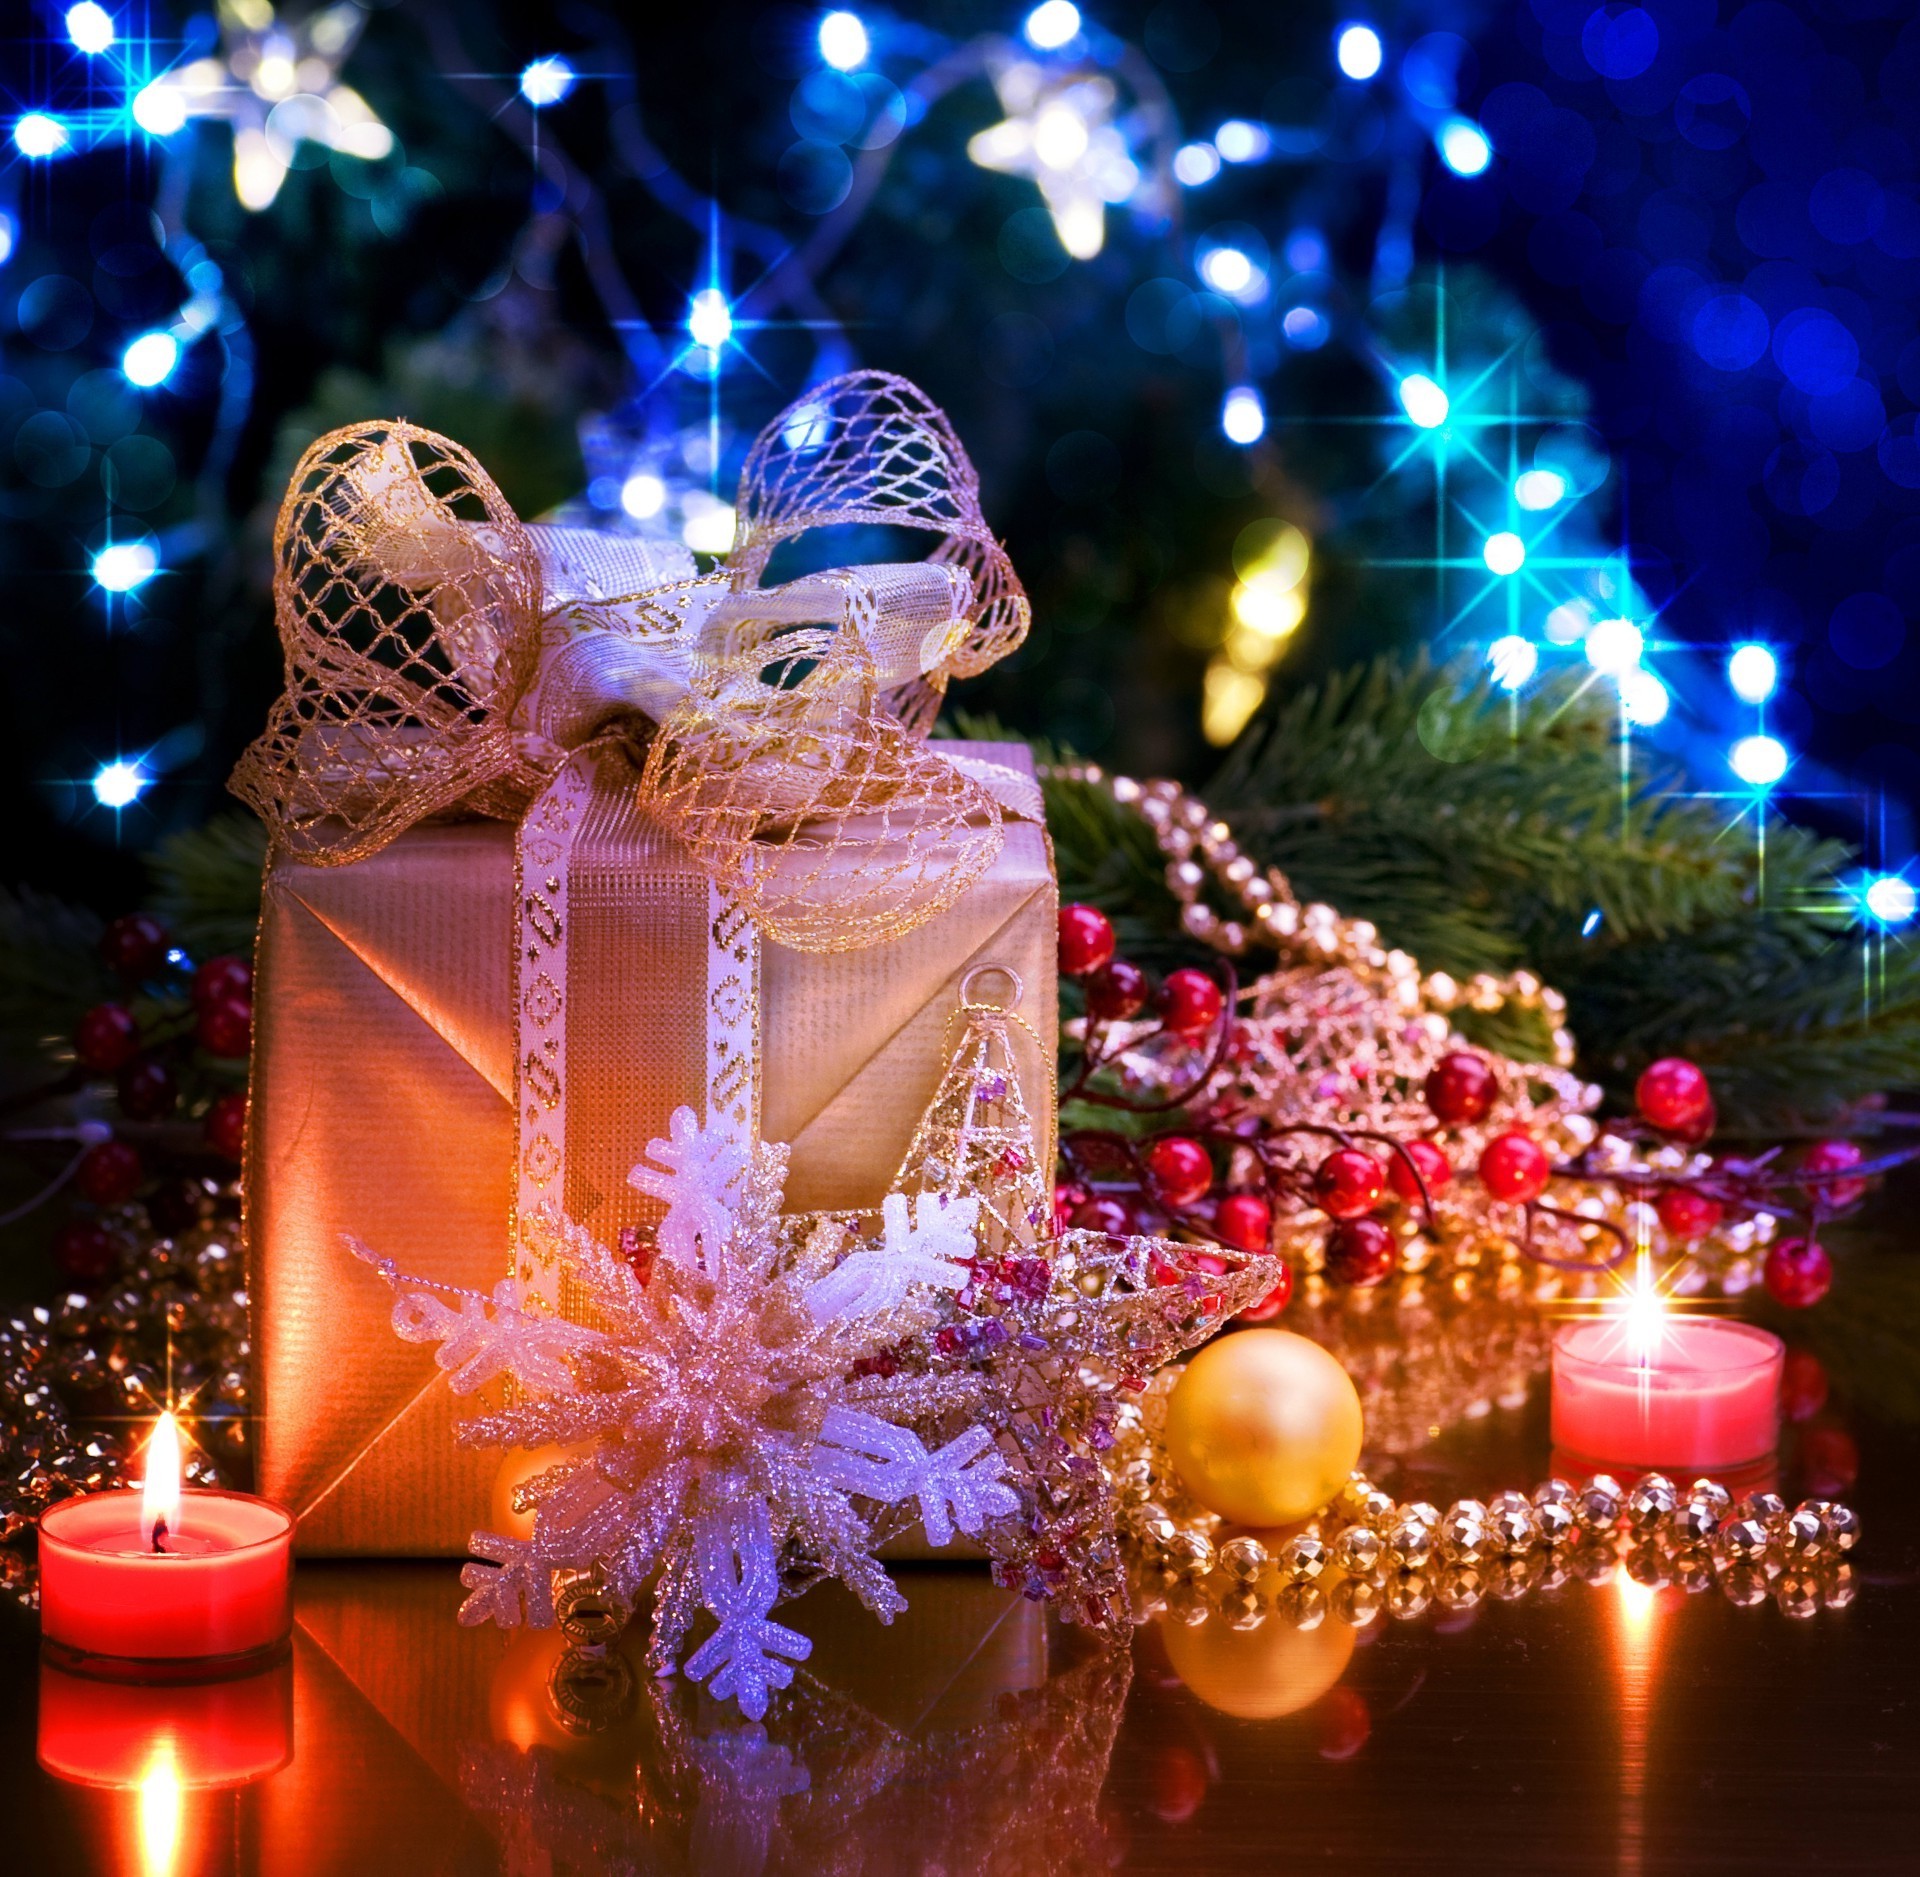 новый год рождество праздник зима украшения нить свеча светит лук золото участник появлением мерри отпуск традиционные рождественская елка свет мяч подарок